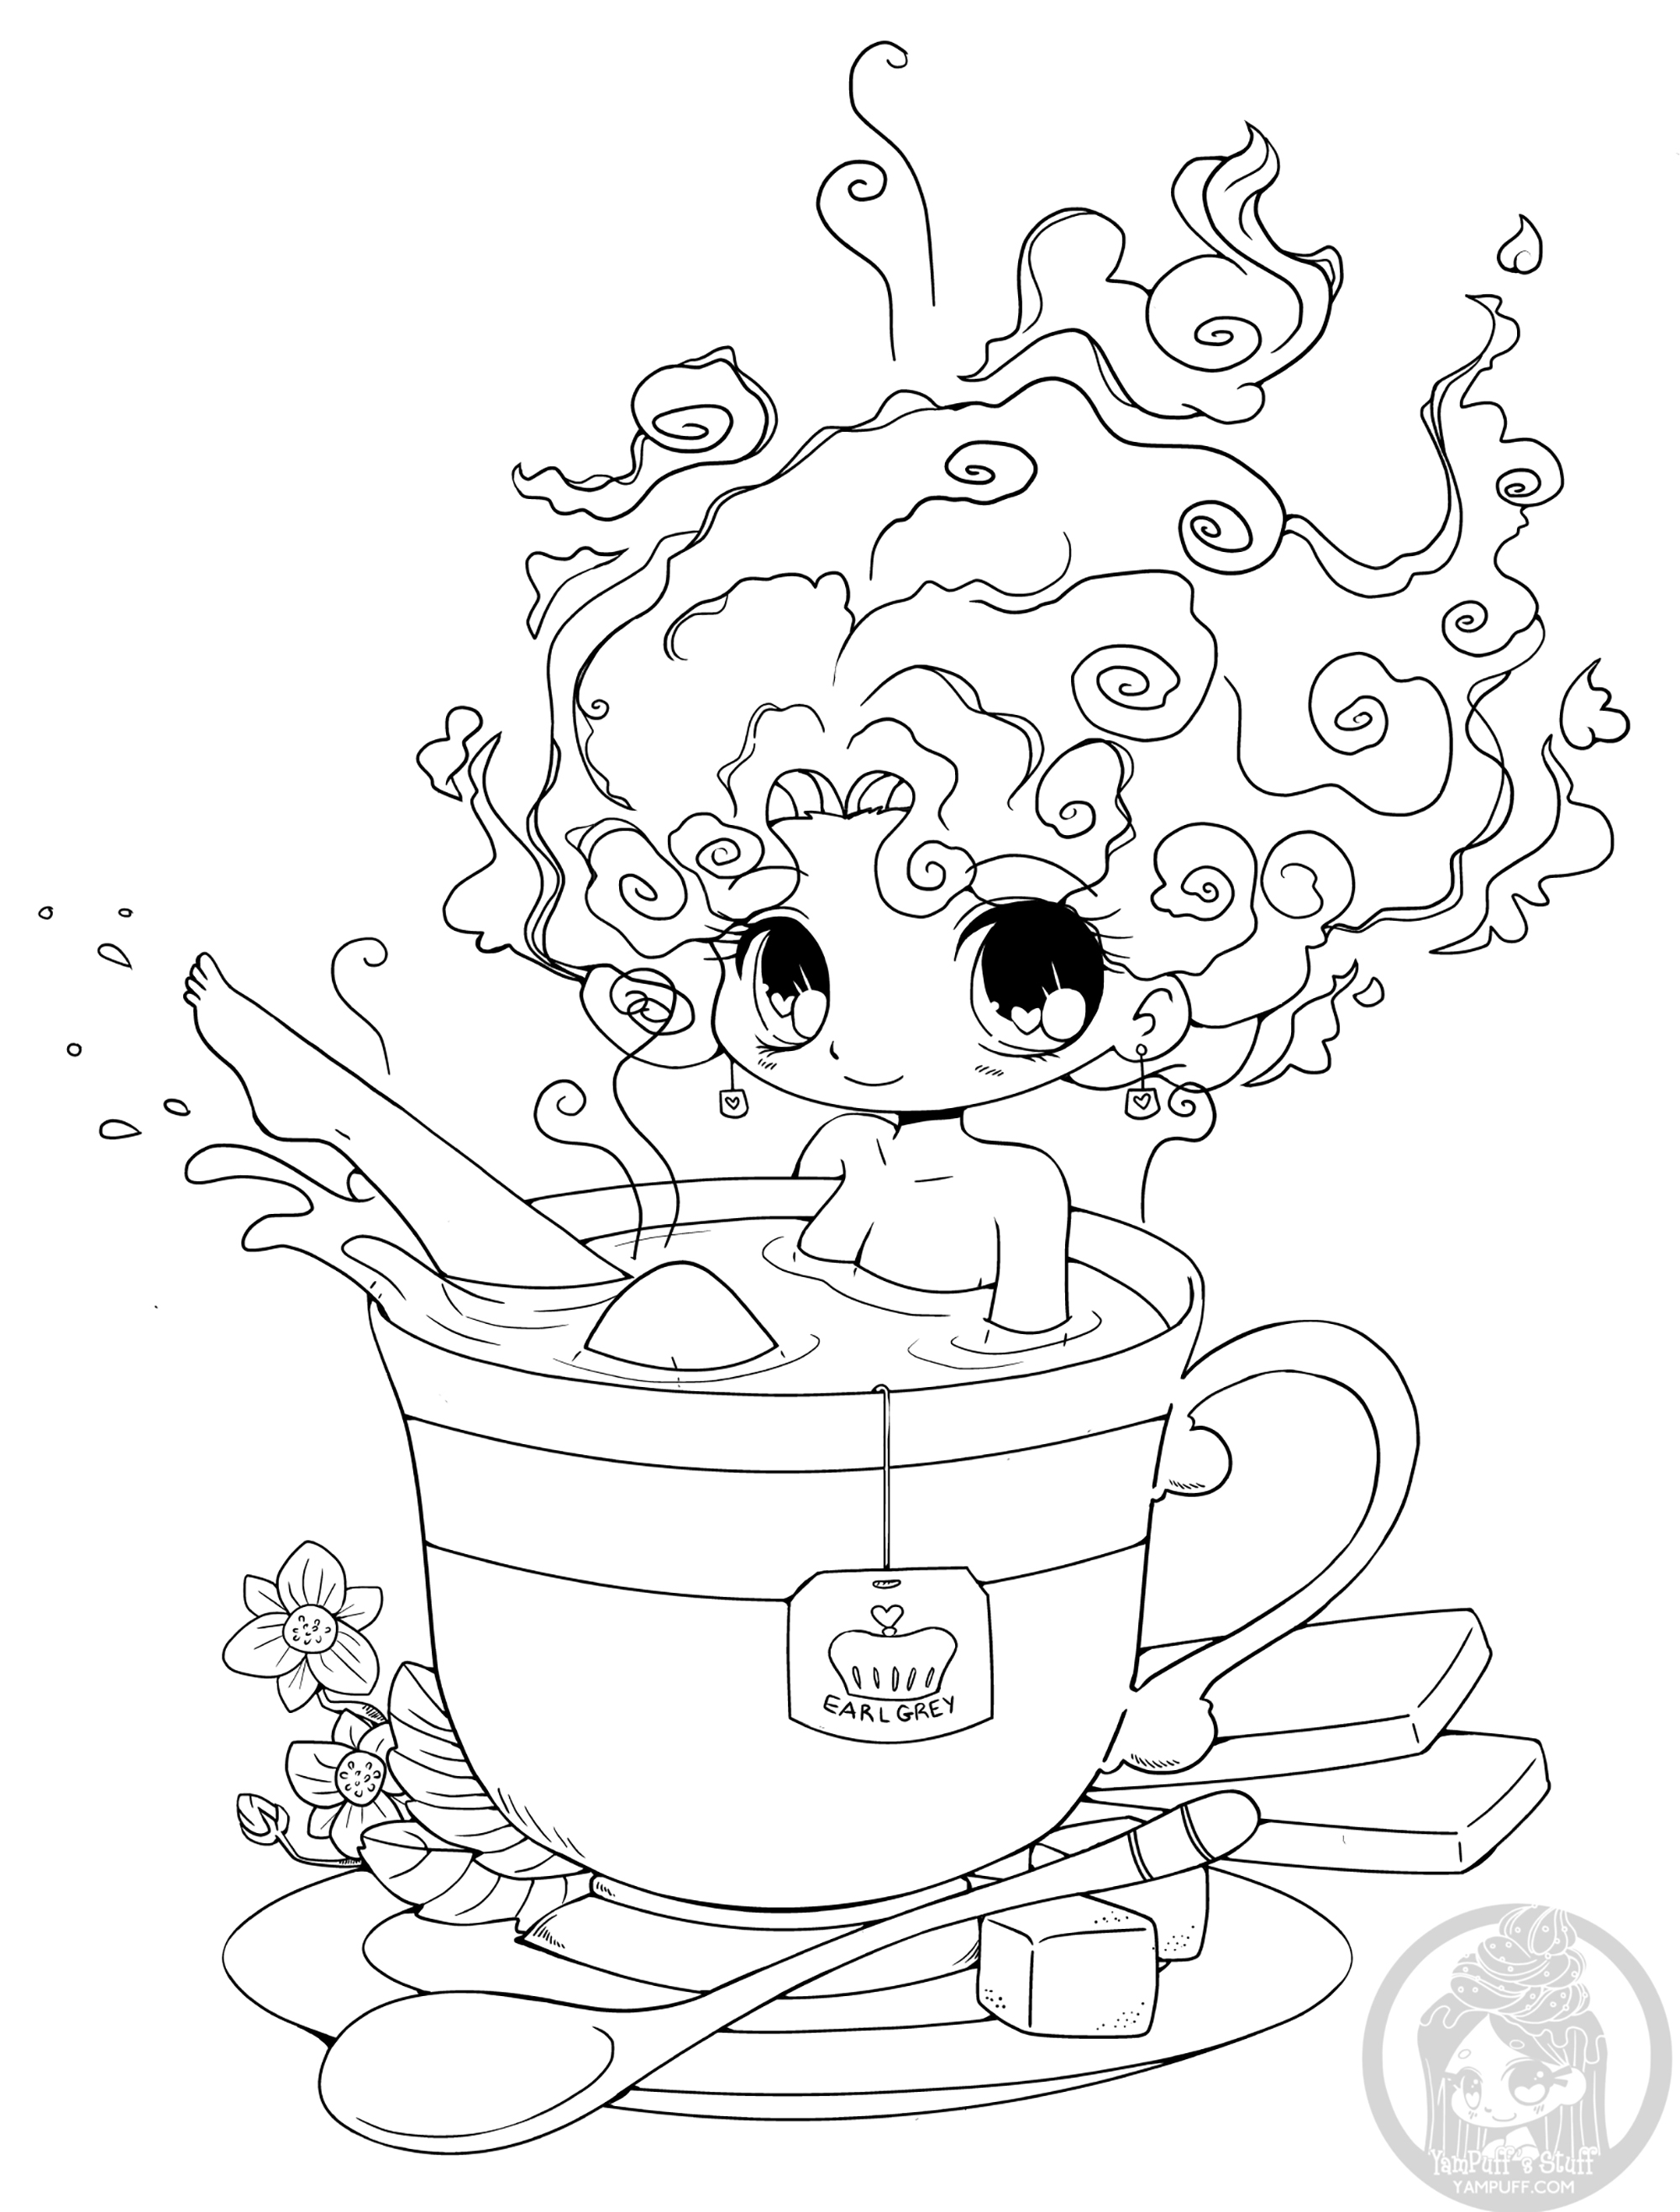 La tazza di tè è il nuovo bagno! Venite a provare!, Artista : Yampuff